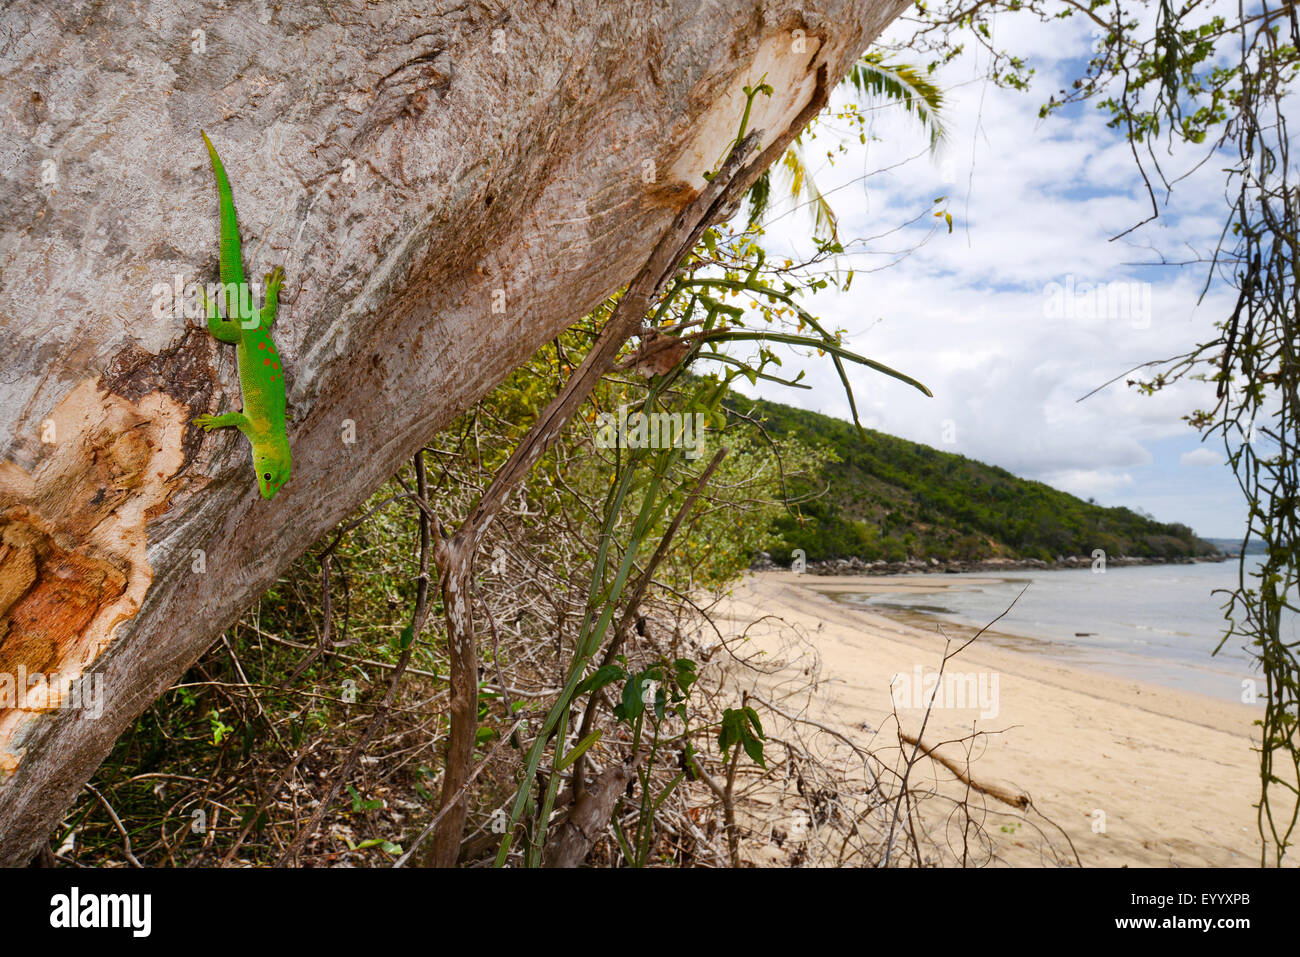 Geco diurno gigante de Madagascar (Phelsuma madagascariensis grandis, Phelsuma grandis), sobre el tronco de un árbol en el paisaje costero, MADAGASCAR Nosy Be, Lokobe Reserva Foto de stock